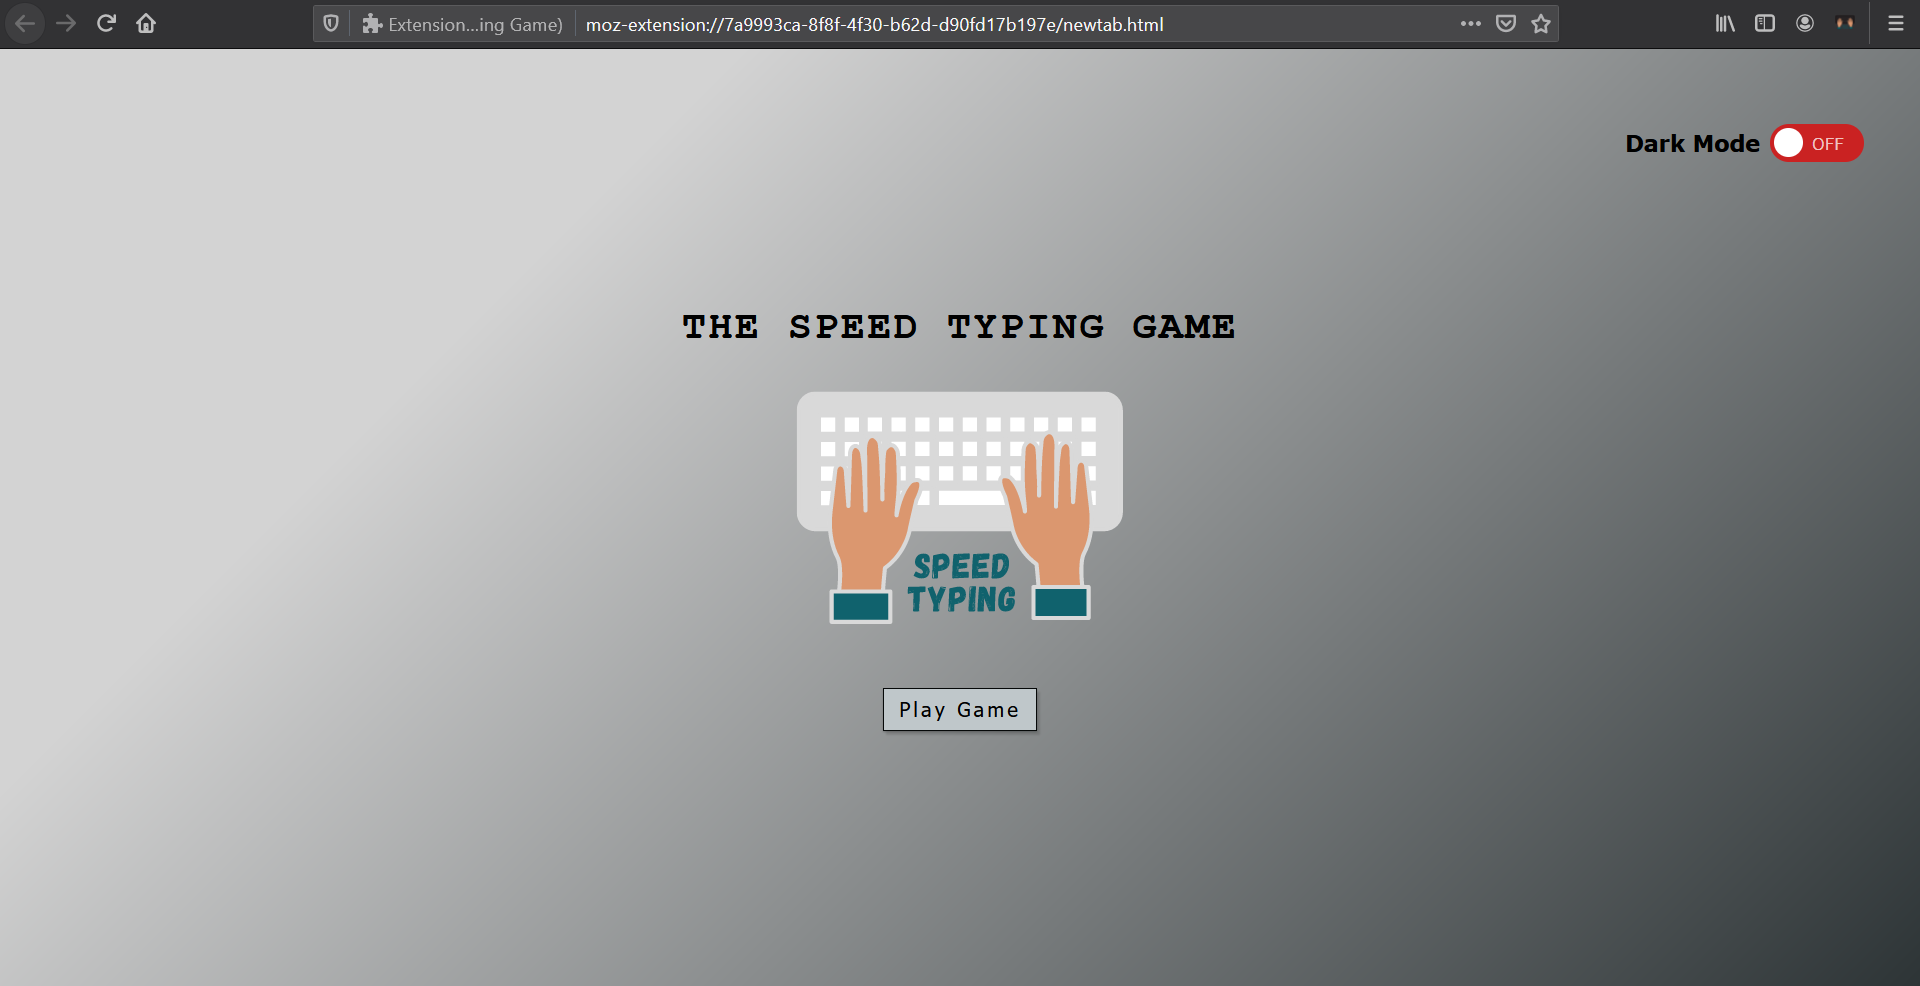 Speed Typing Game